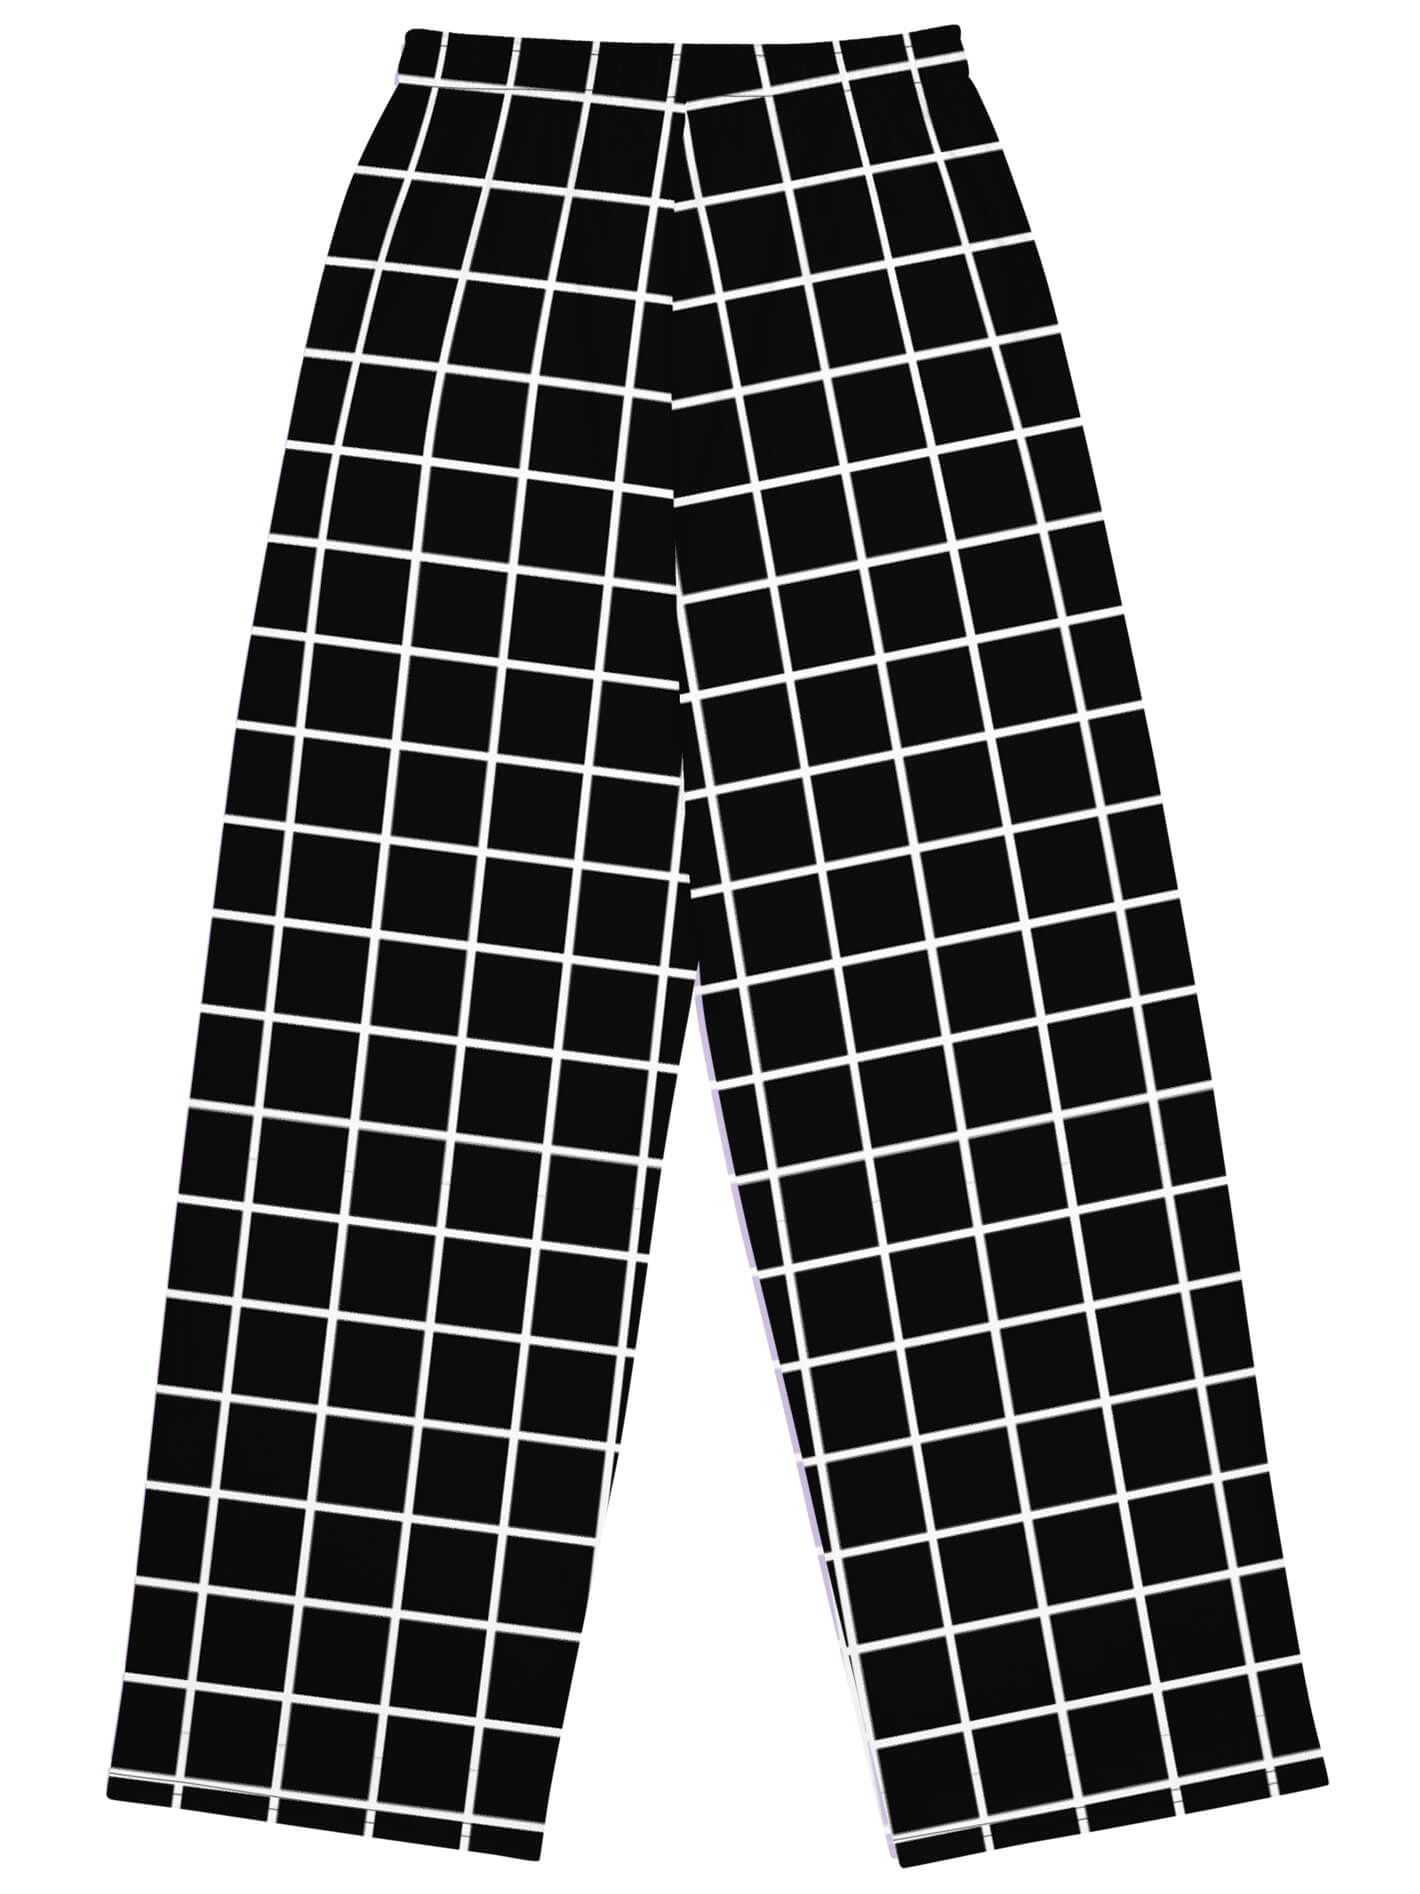 Black grid vaporwave plus size pants.